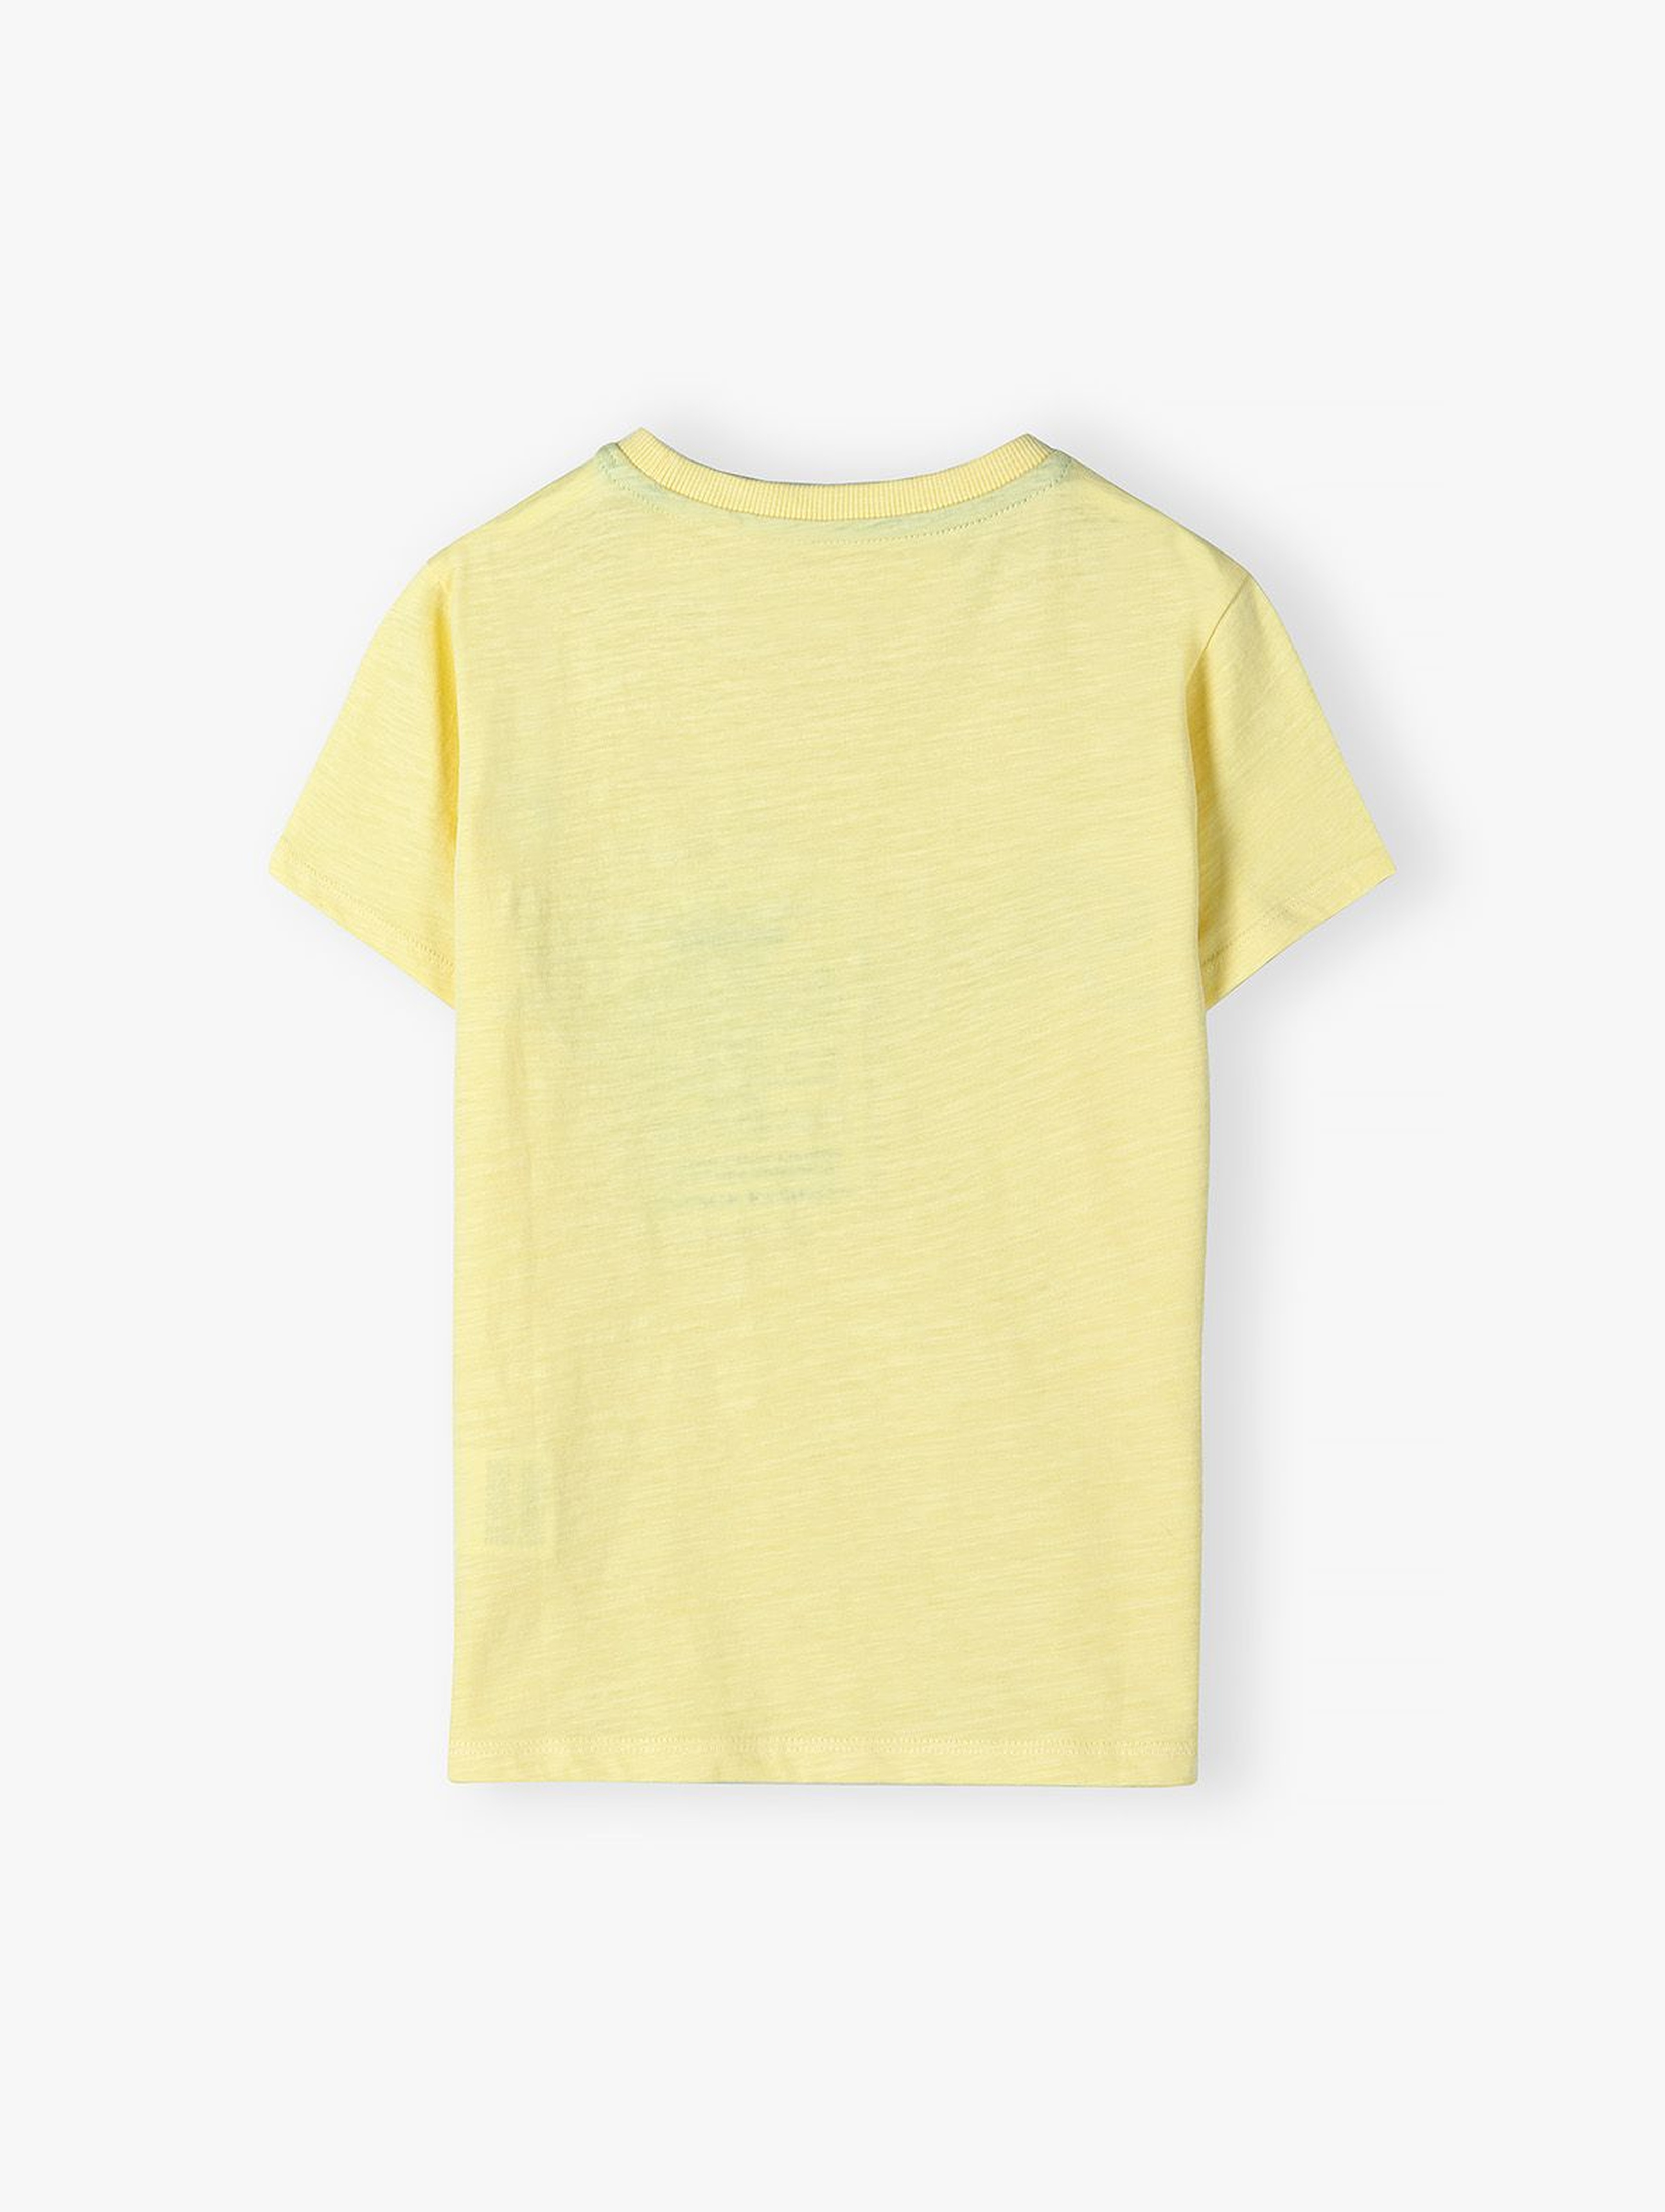 Dzianinowy T-shirt z napisem - żółty